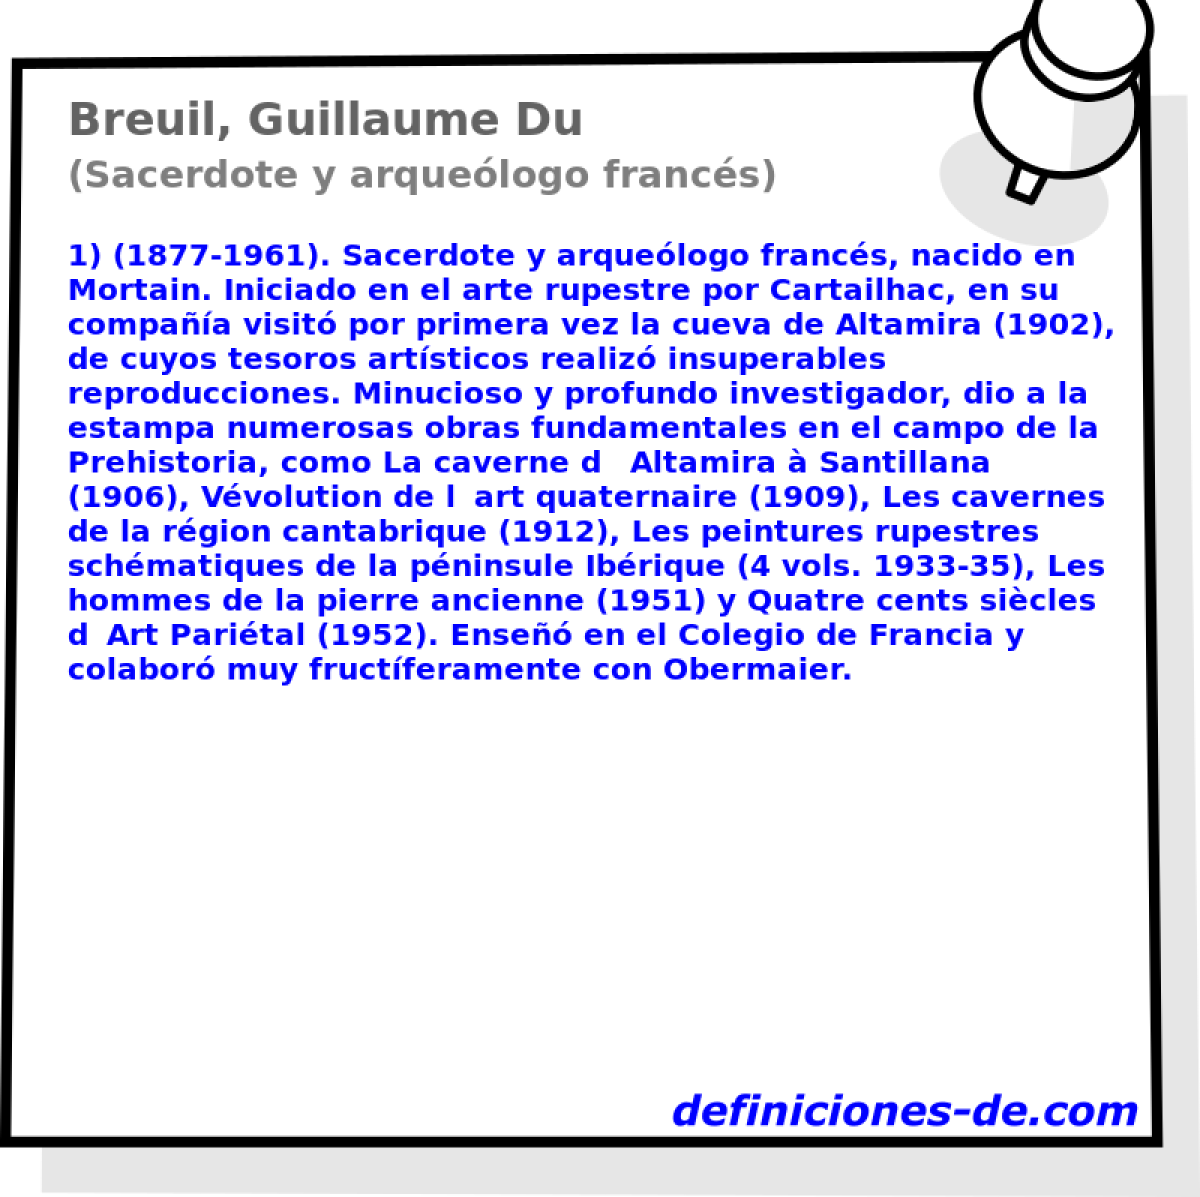 Breuil, Guillaume Du (Sacerdote y arquelogo francs)